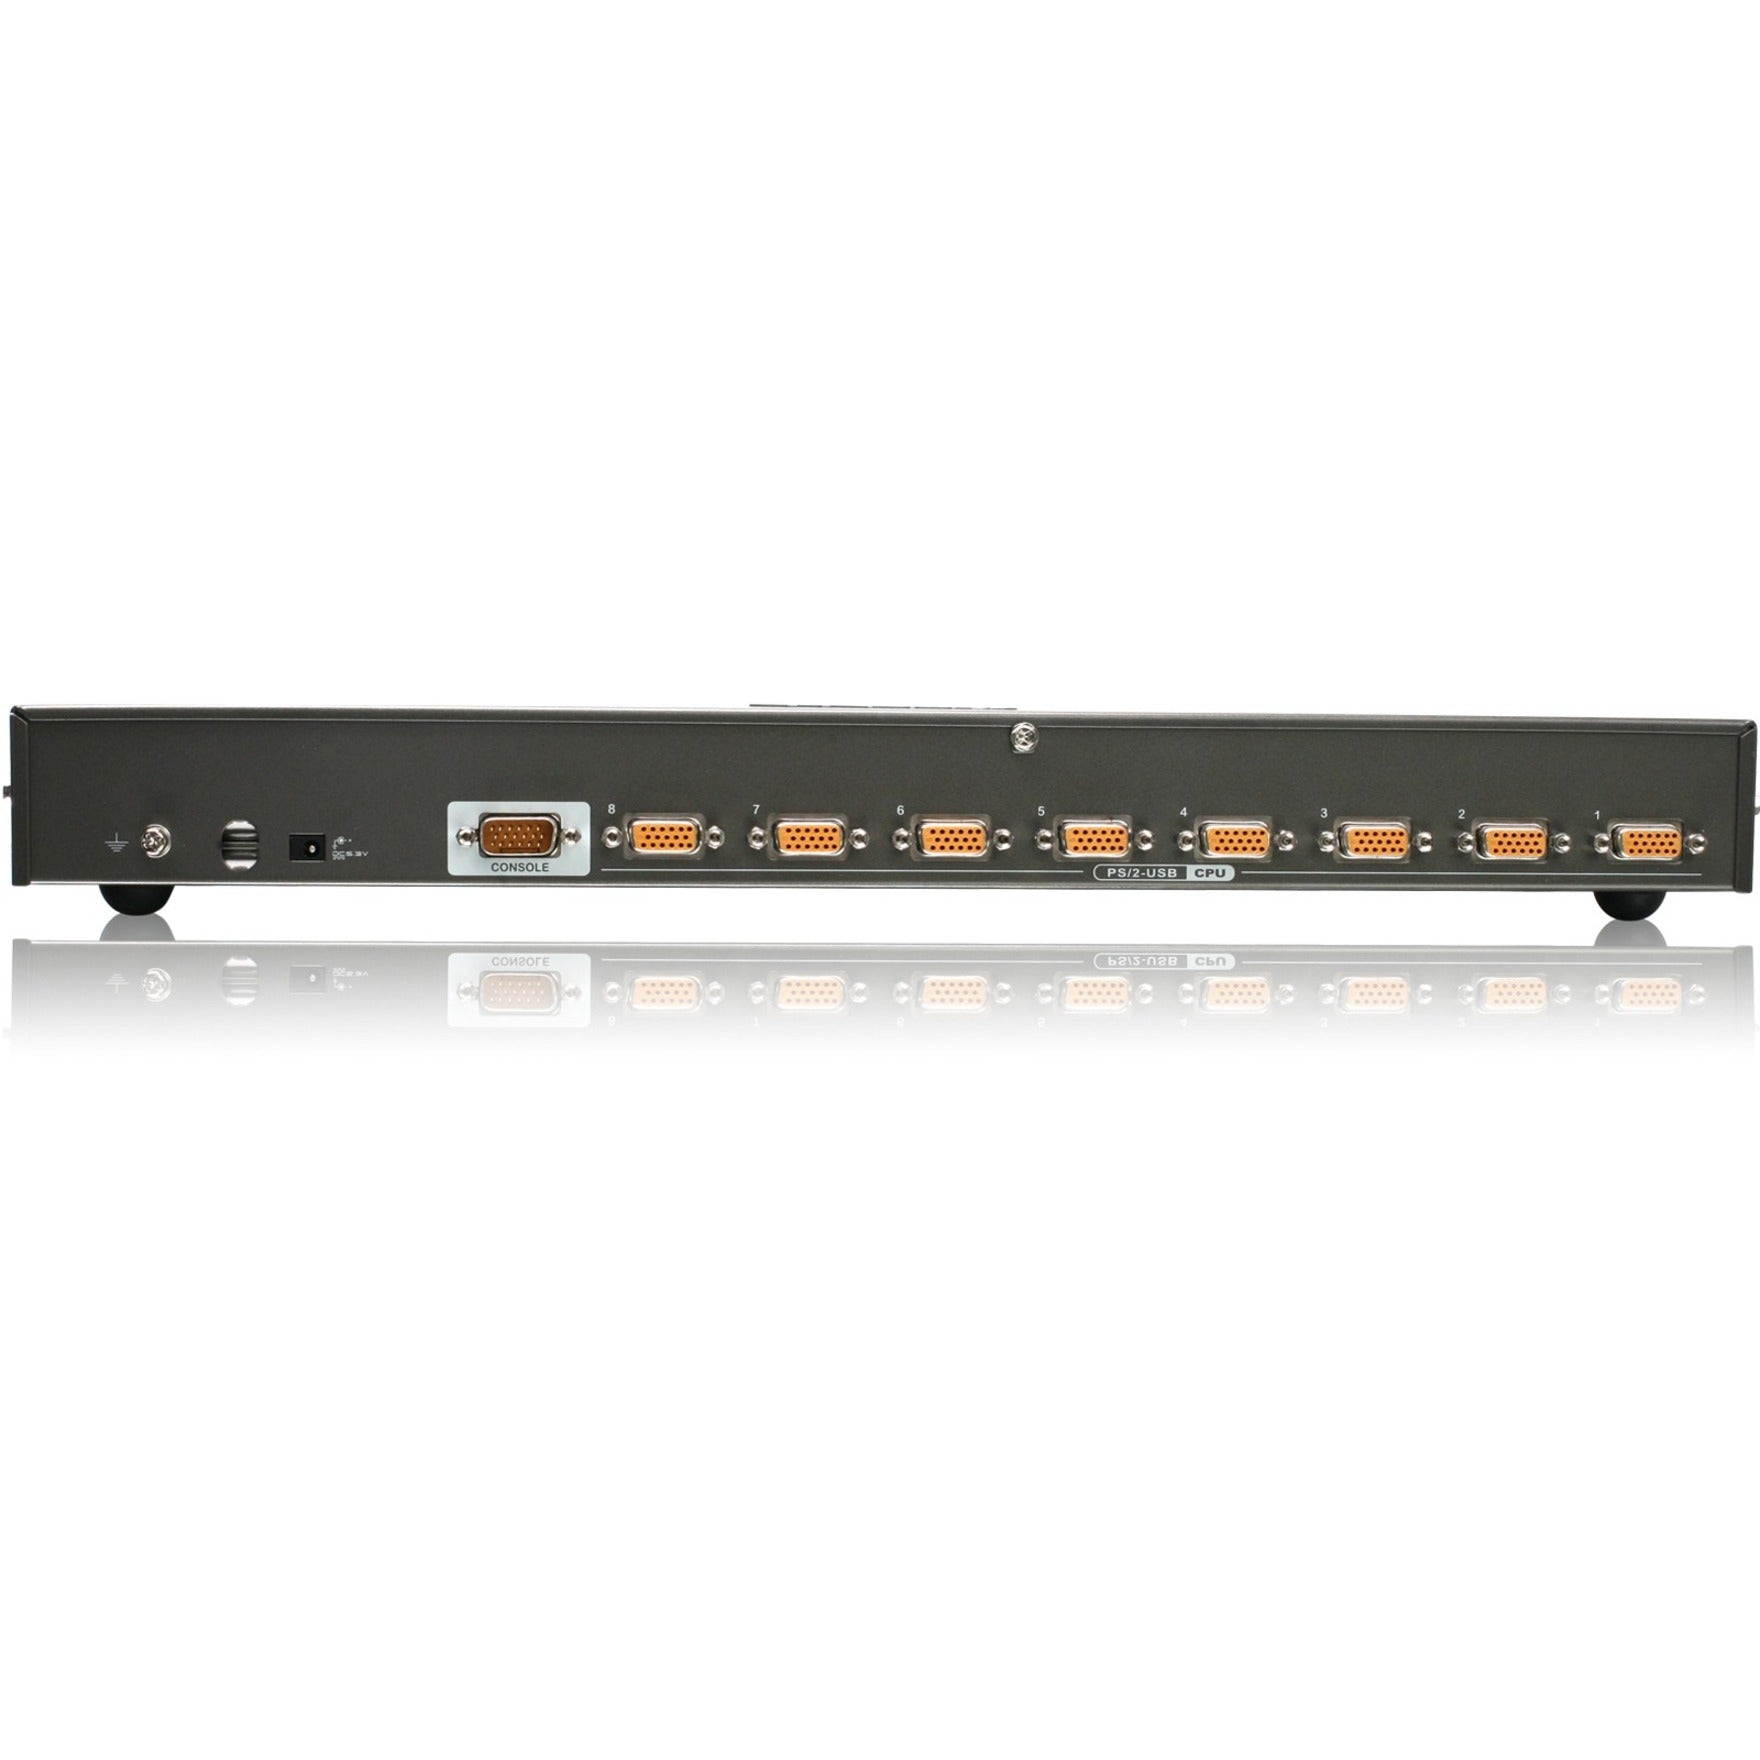 IOGEAR GCS1808DPKITU 8端口USB PS/2混合VGA DisplayPort KVM套件，3年保修，台湾原产地。品牌名：IOGEAR。翻译品牌名：艾奥达。